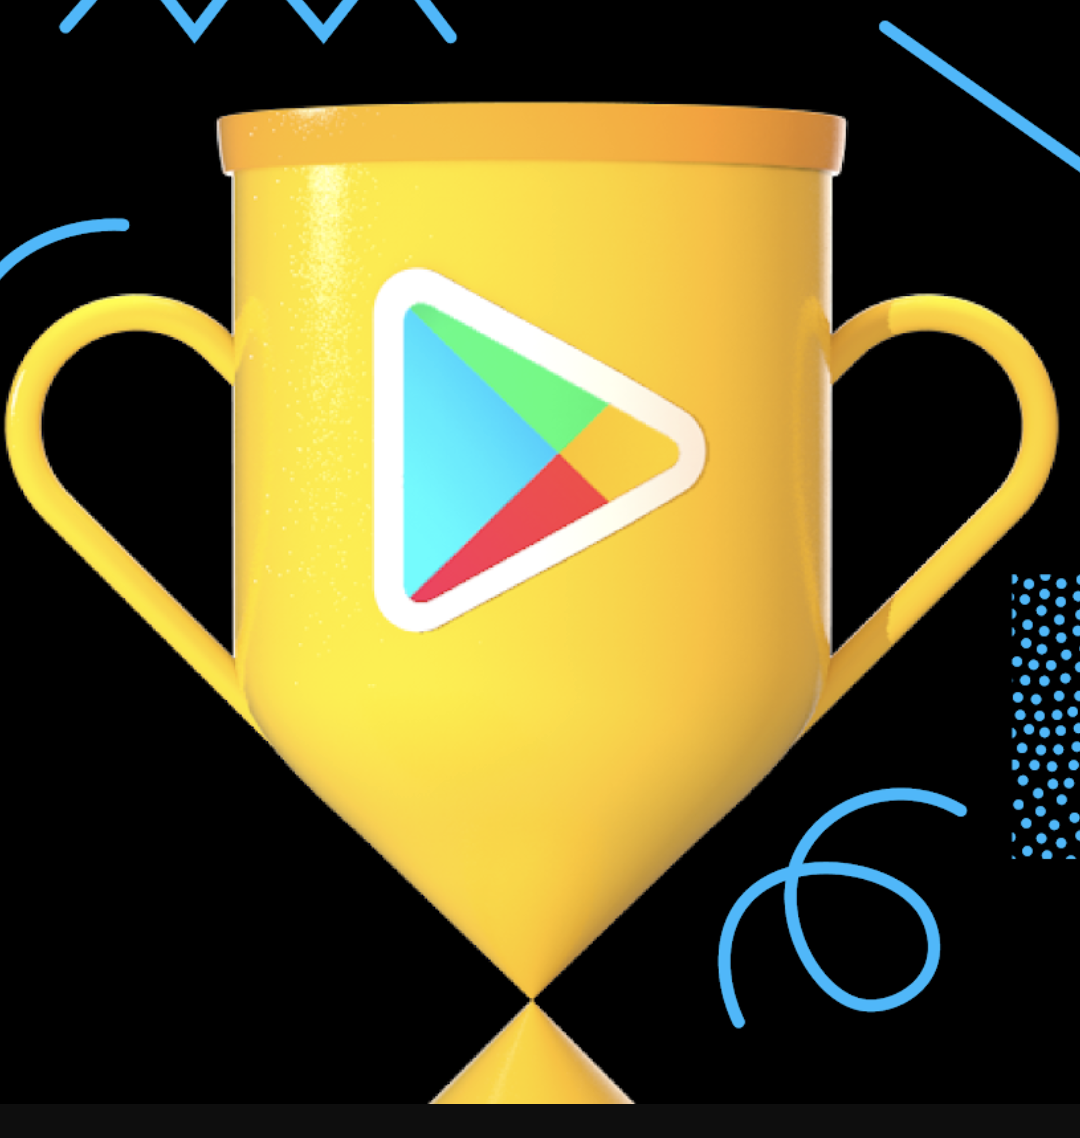 Google Best Play Awards 2020 : découvrez les meilleures apps de l'année